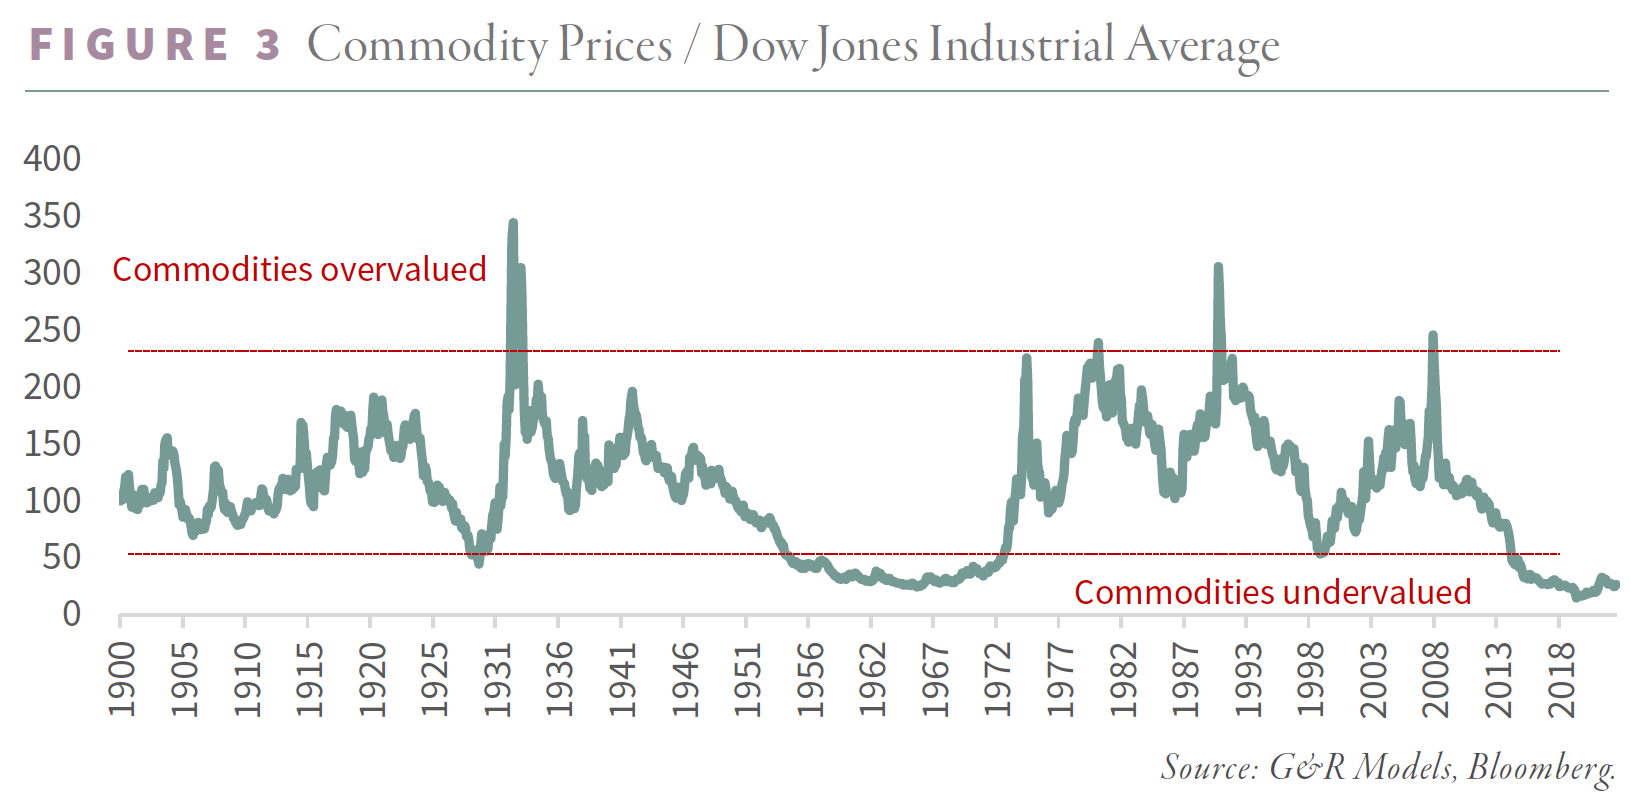 Commodity Prices  Dow Jones Industrial Average - Figure 3